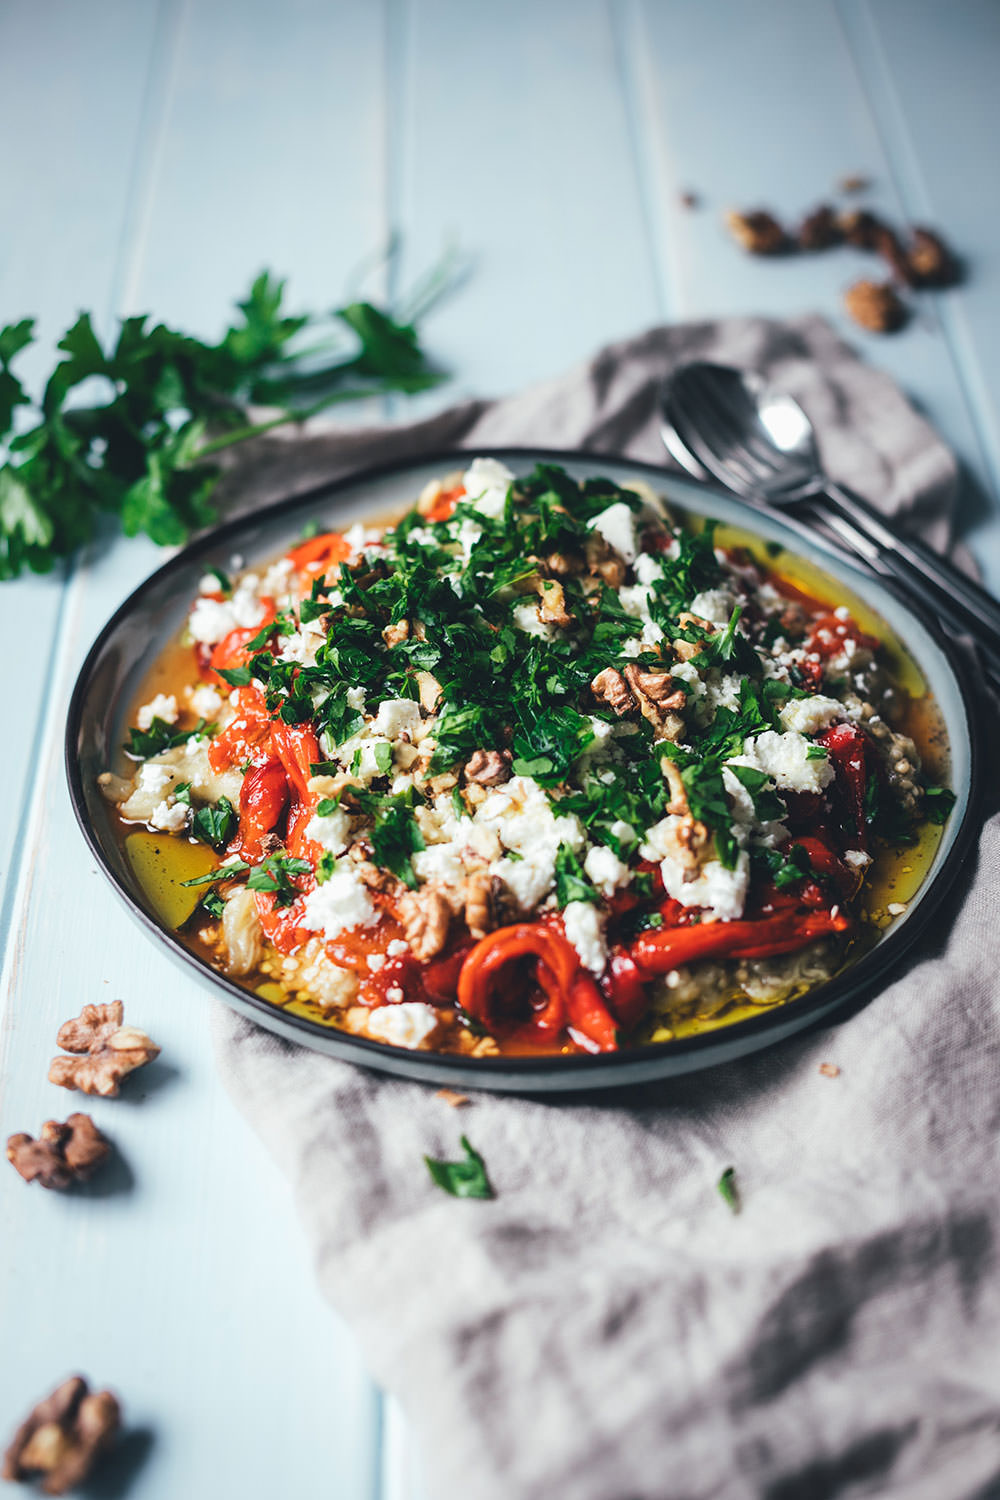 Rezept für gerösteten Auberginen-Paprika-Salat mit Walnüssen und Feta | aromatischer Sommersalat als Grillbeilage oder Mezze | moeyskitchen.com #salat #auberginen #paprika #sommerküche #rezept #kochen #feta #mezze #levanteküche #arabischeküche #babaghanoush #muhammara #veggie #grillen #bbq